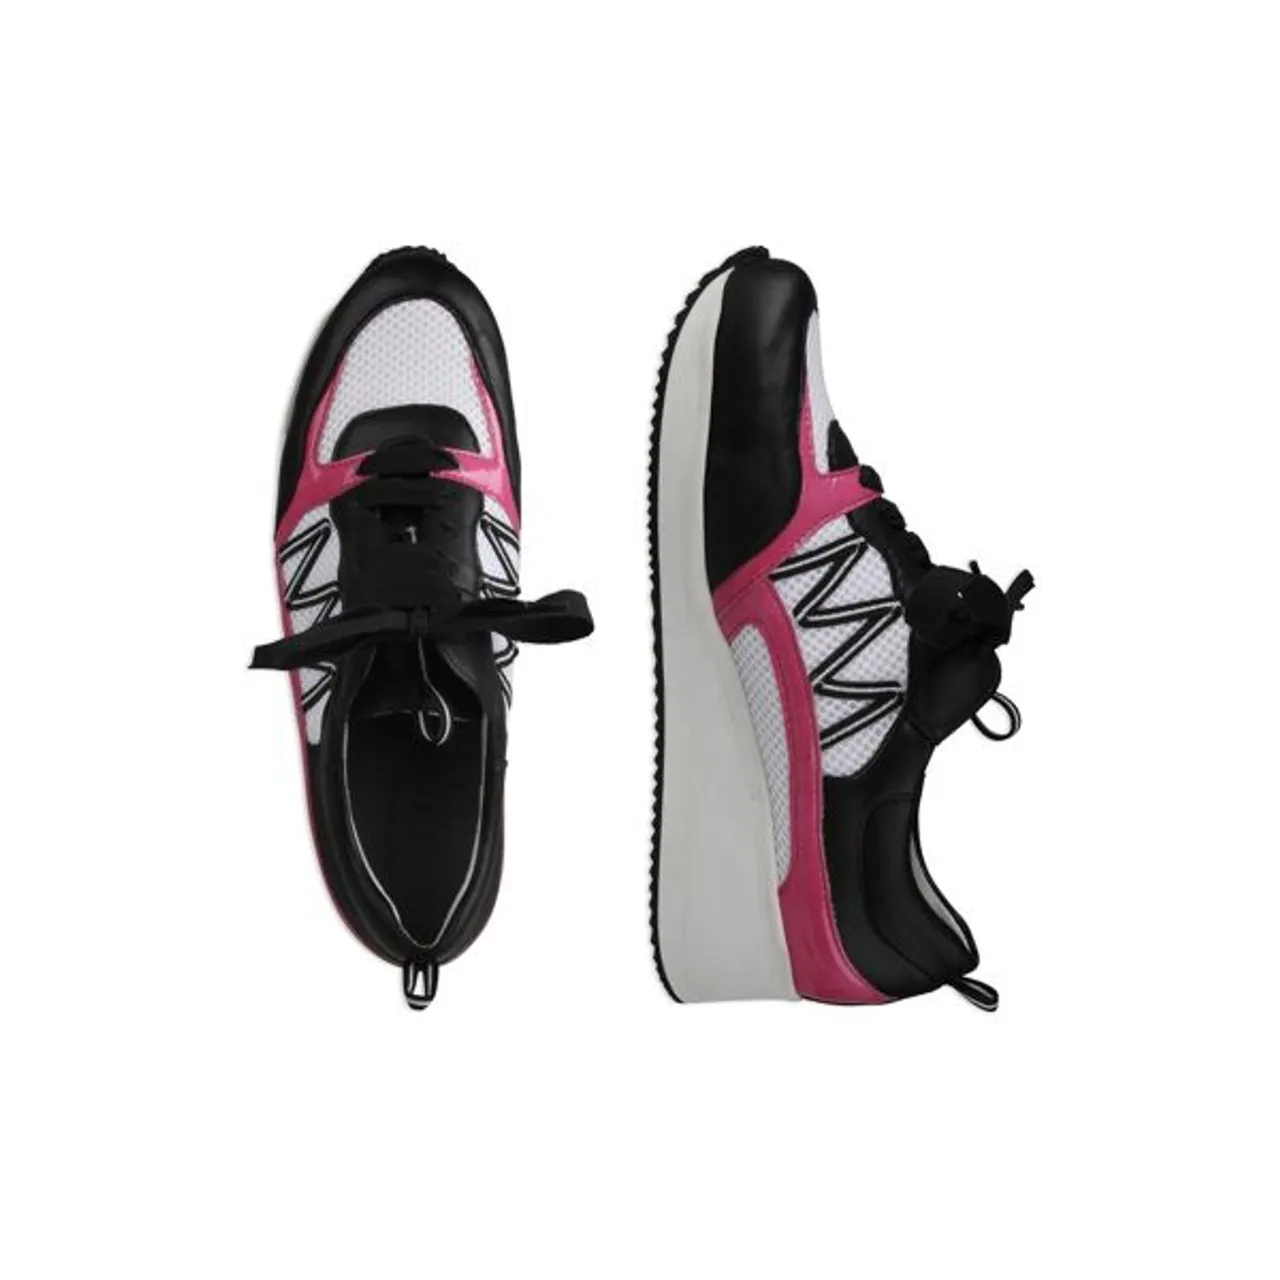 Sneaker LEI BY TESSAMINO "Nele" Gr. 35, schwarz (schwarz, pink) Damen Schuhe Sneaker